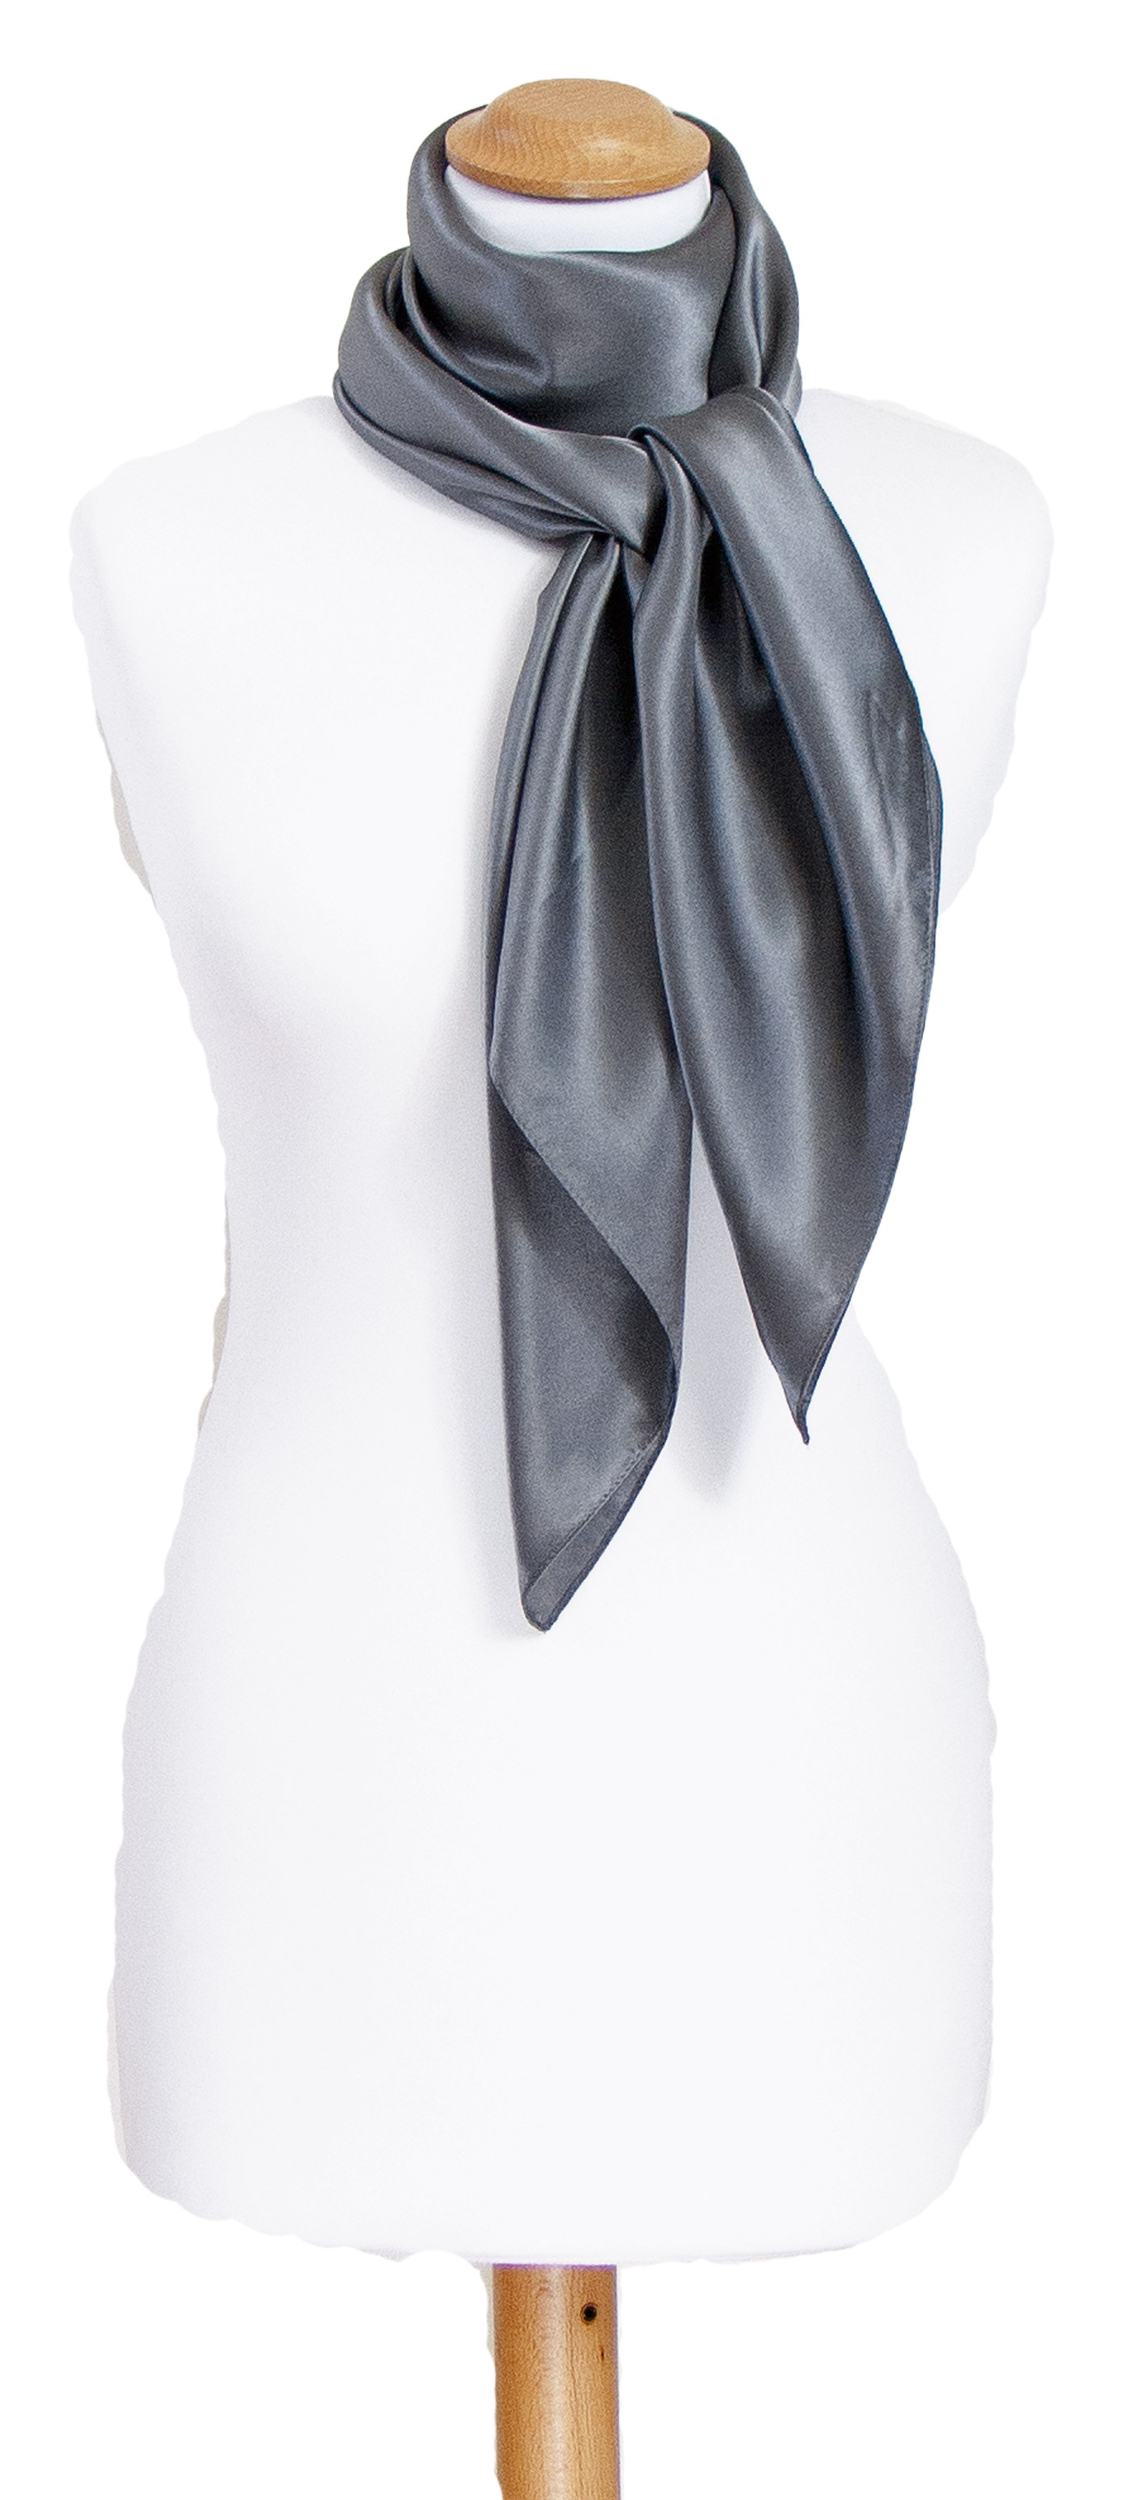 Foulard carré en soie gris uni 110 cm